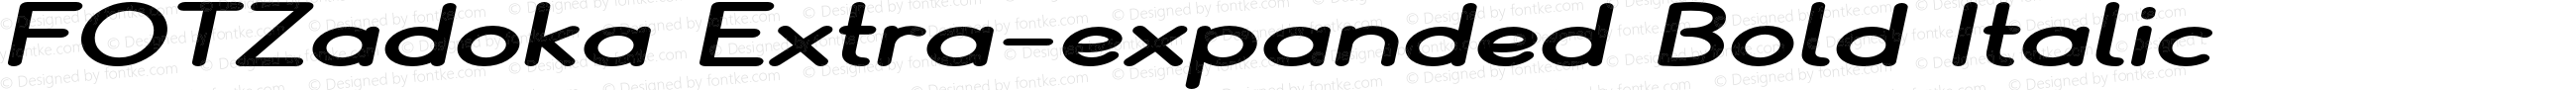 FOTZadoka Extra-expanded Bold Italic